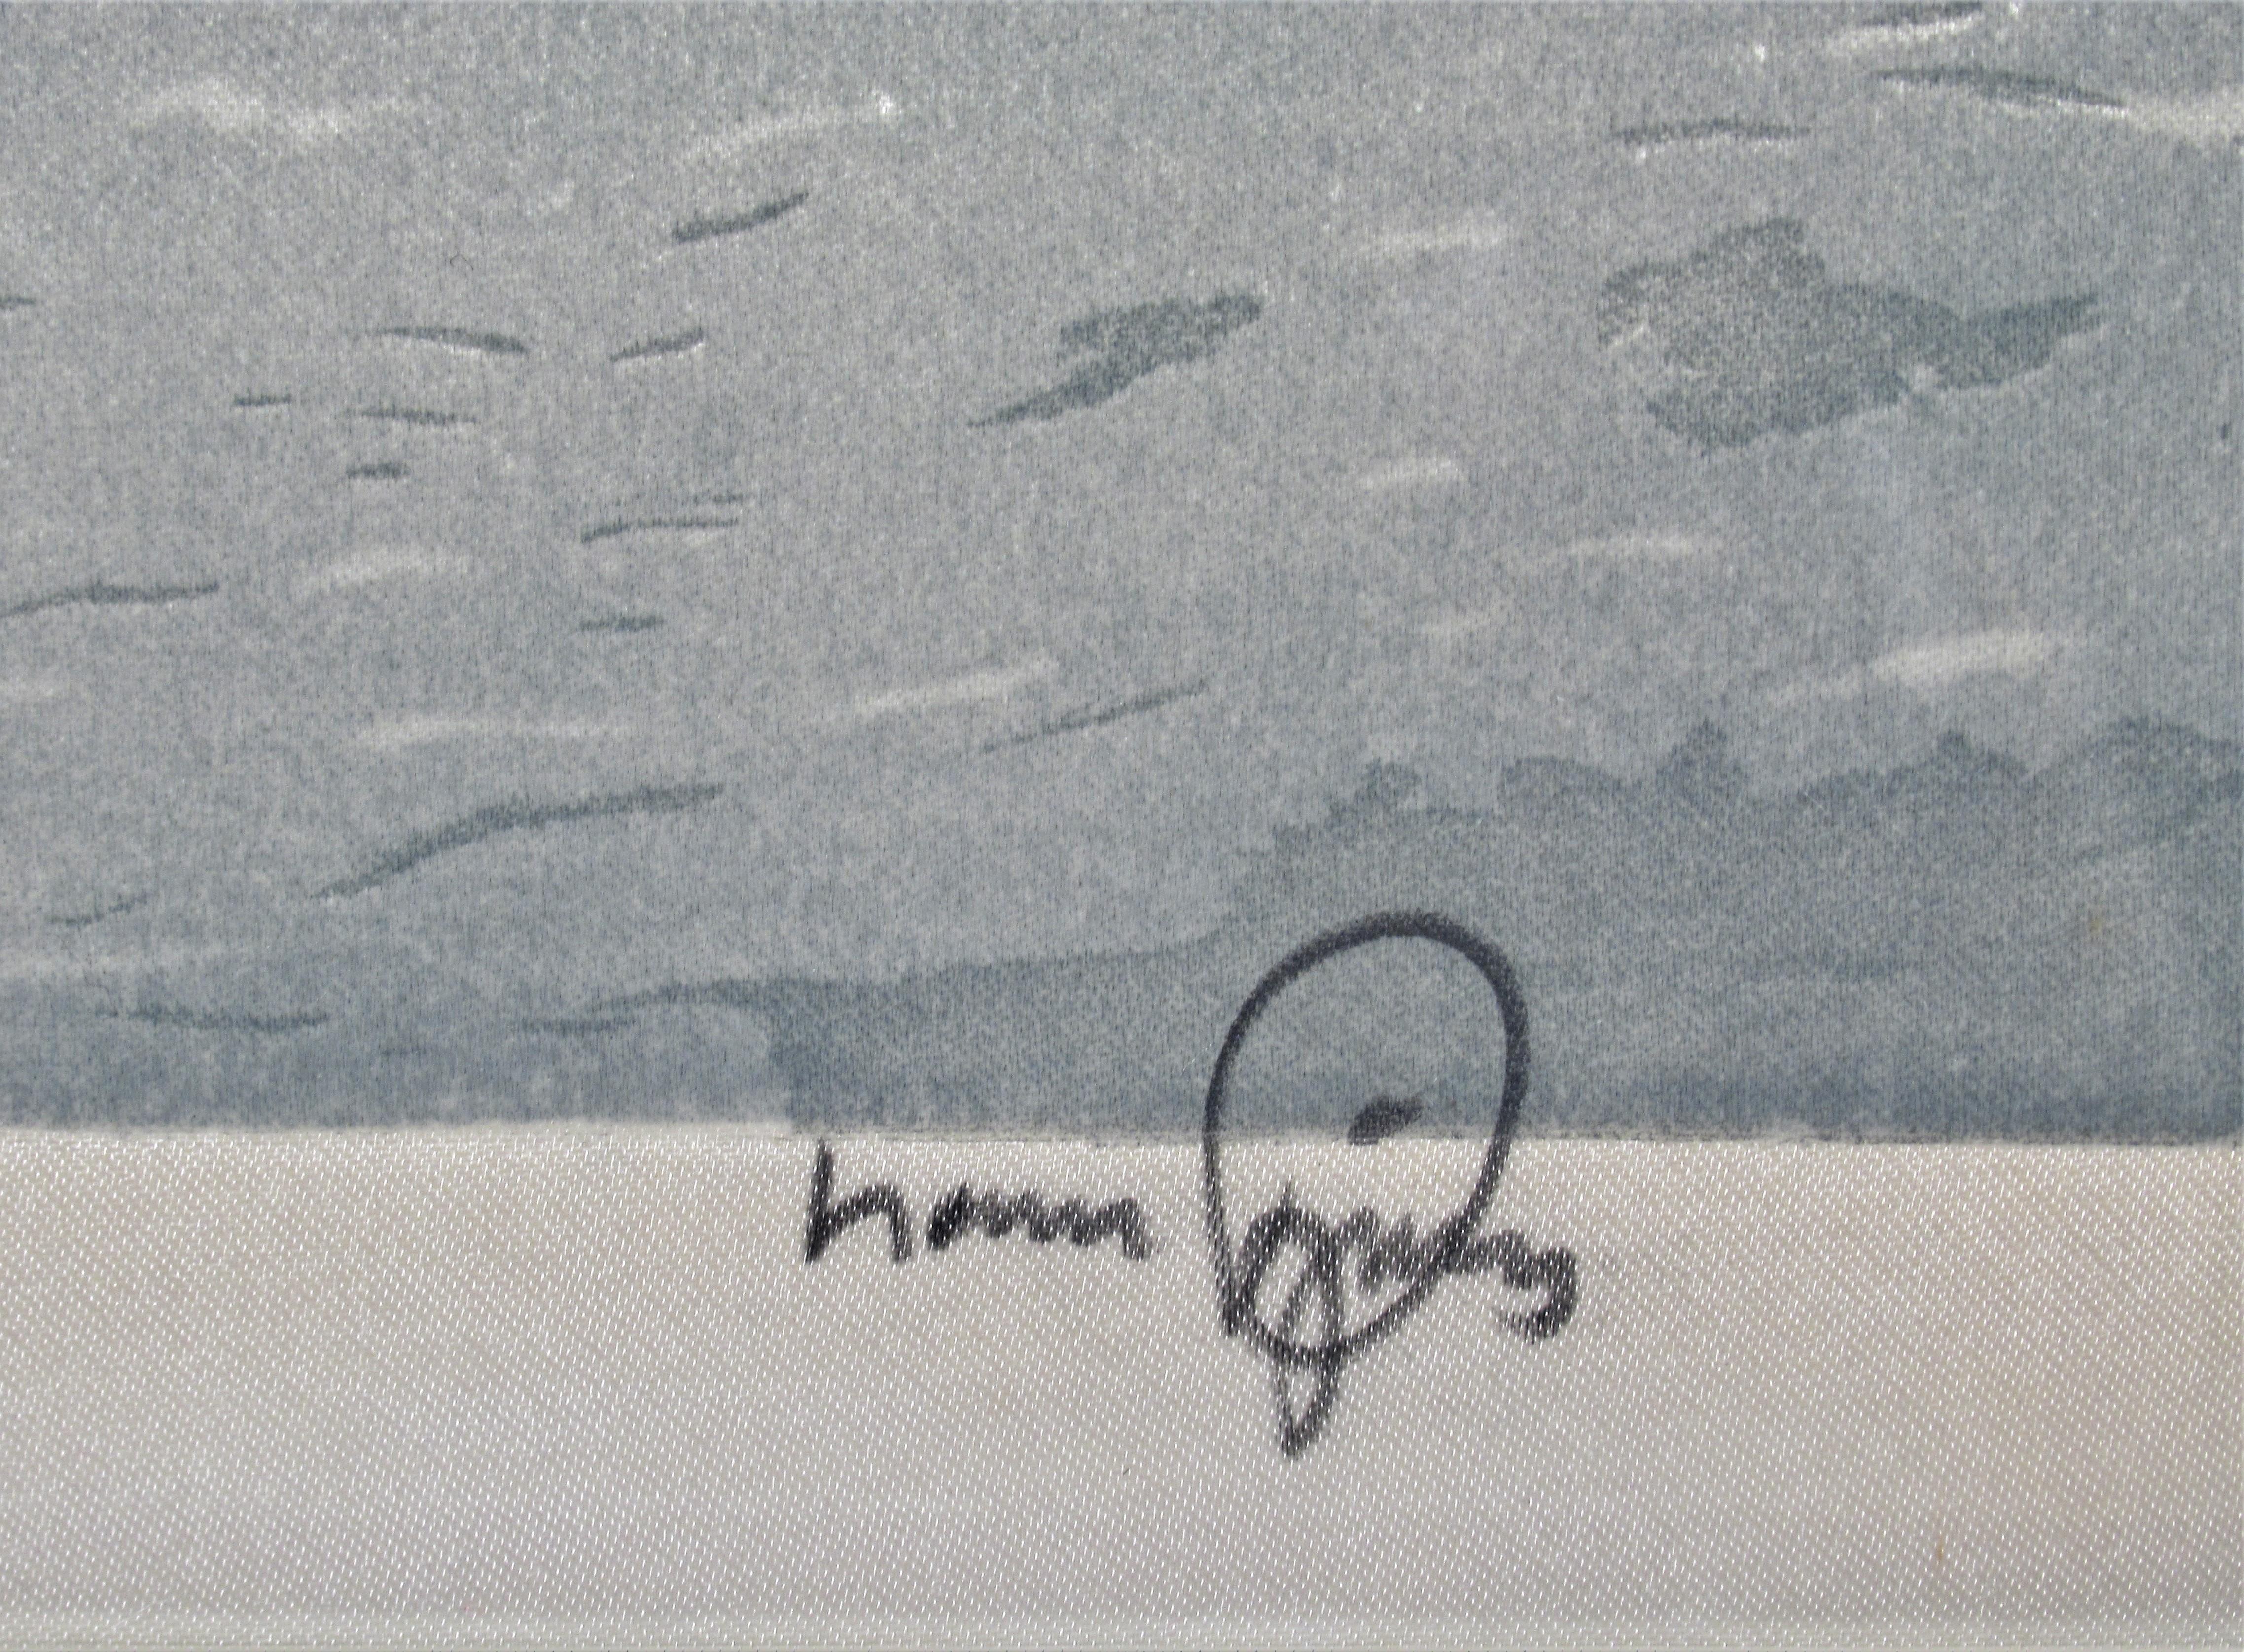 Artiste :   Hans Figura (Autrichien, 1898-1978)
Titre :  Paysage d'hiver
Année :   Circa 1950
Moyen :	 Gravure en couleur avec aquatinte sur soie
Edition :   Inconnu 
Marque de plaque (Image) taille : 17.25 x 13.75 pouces
Taille du cadre :  23 x